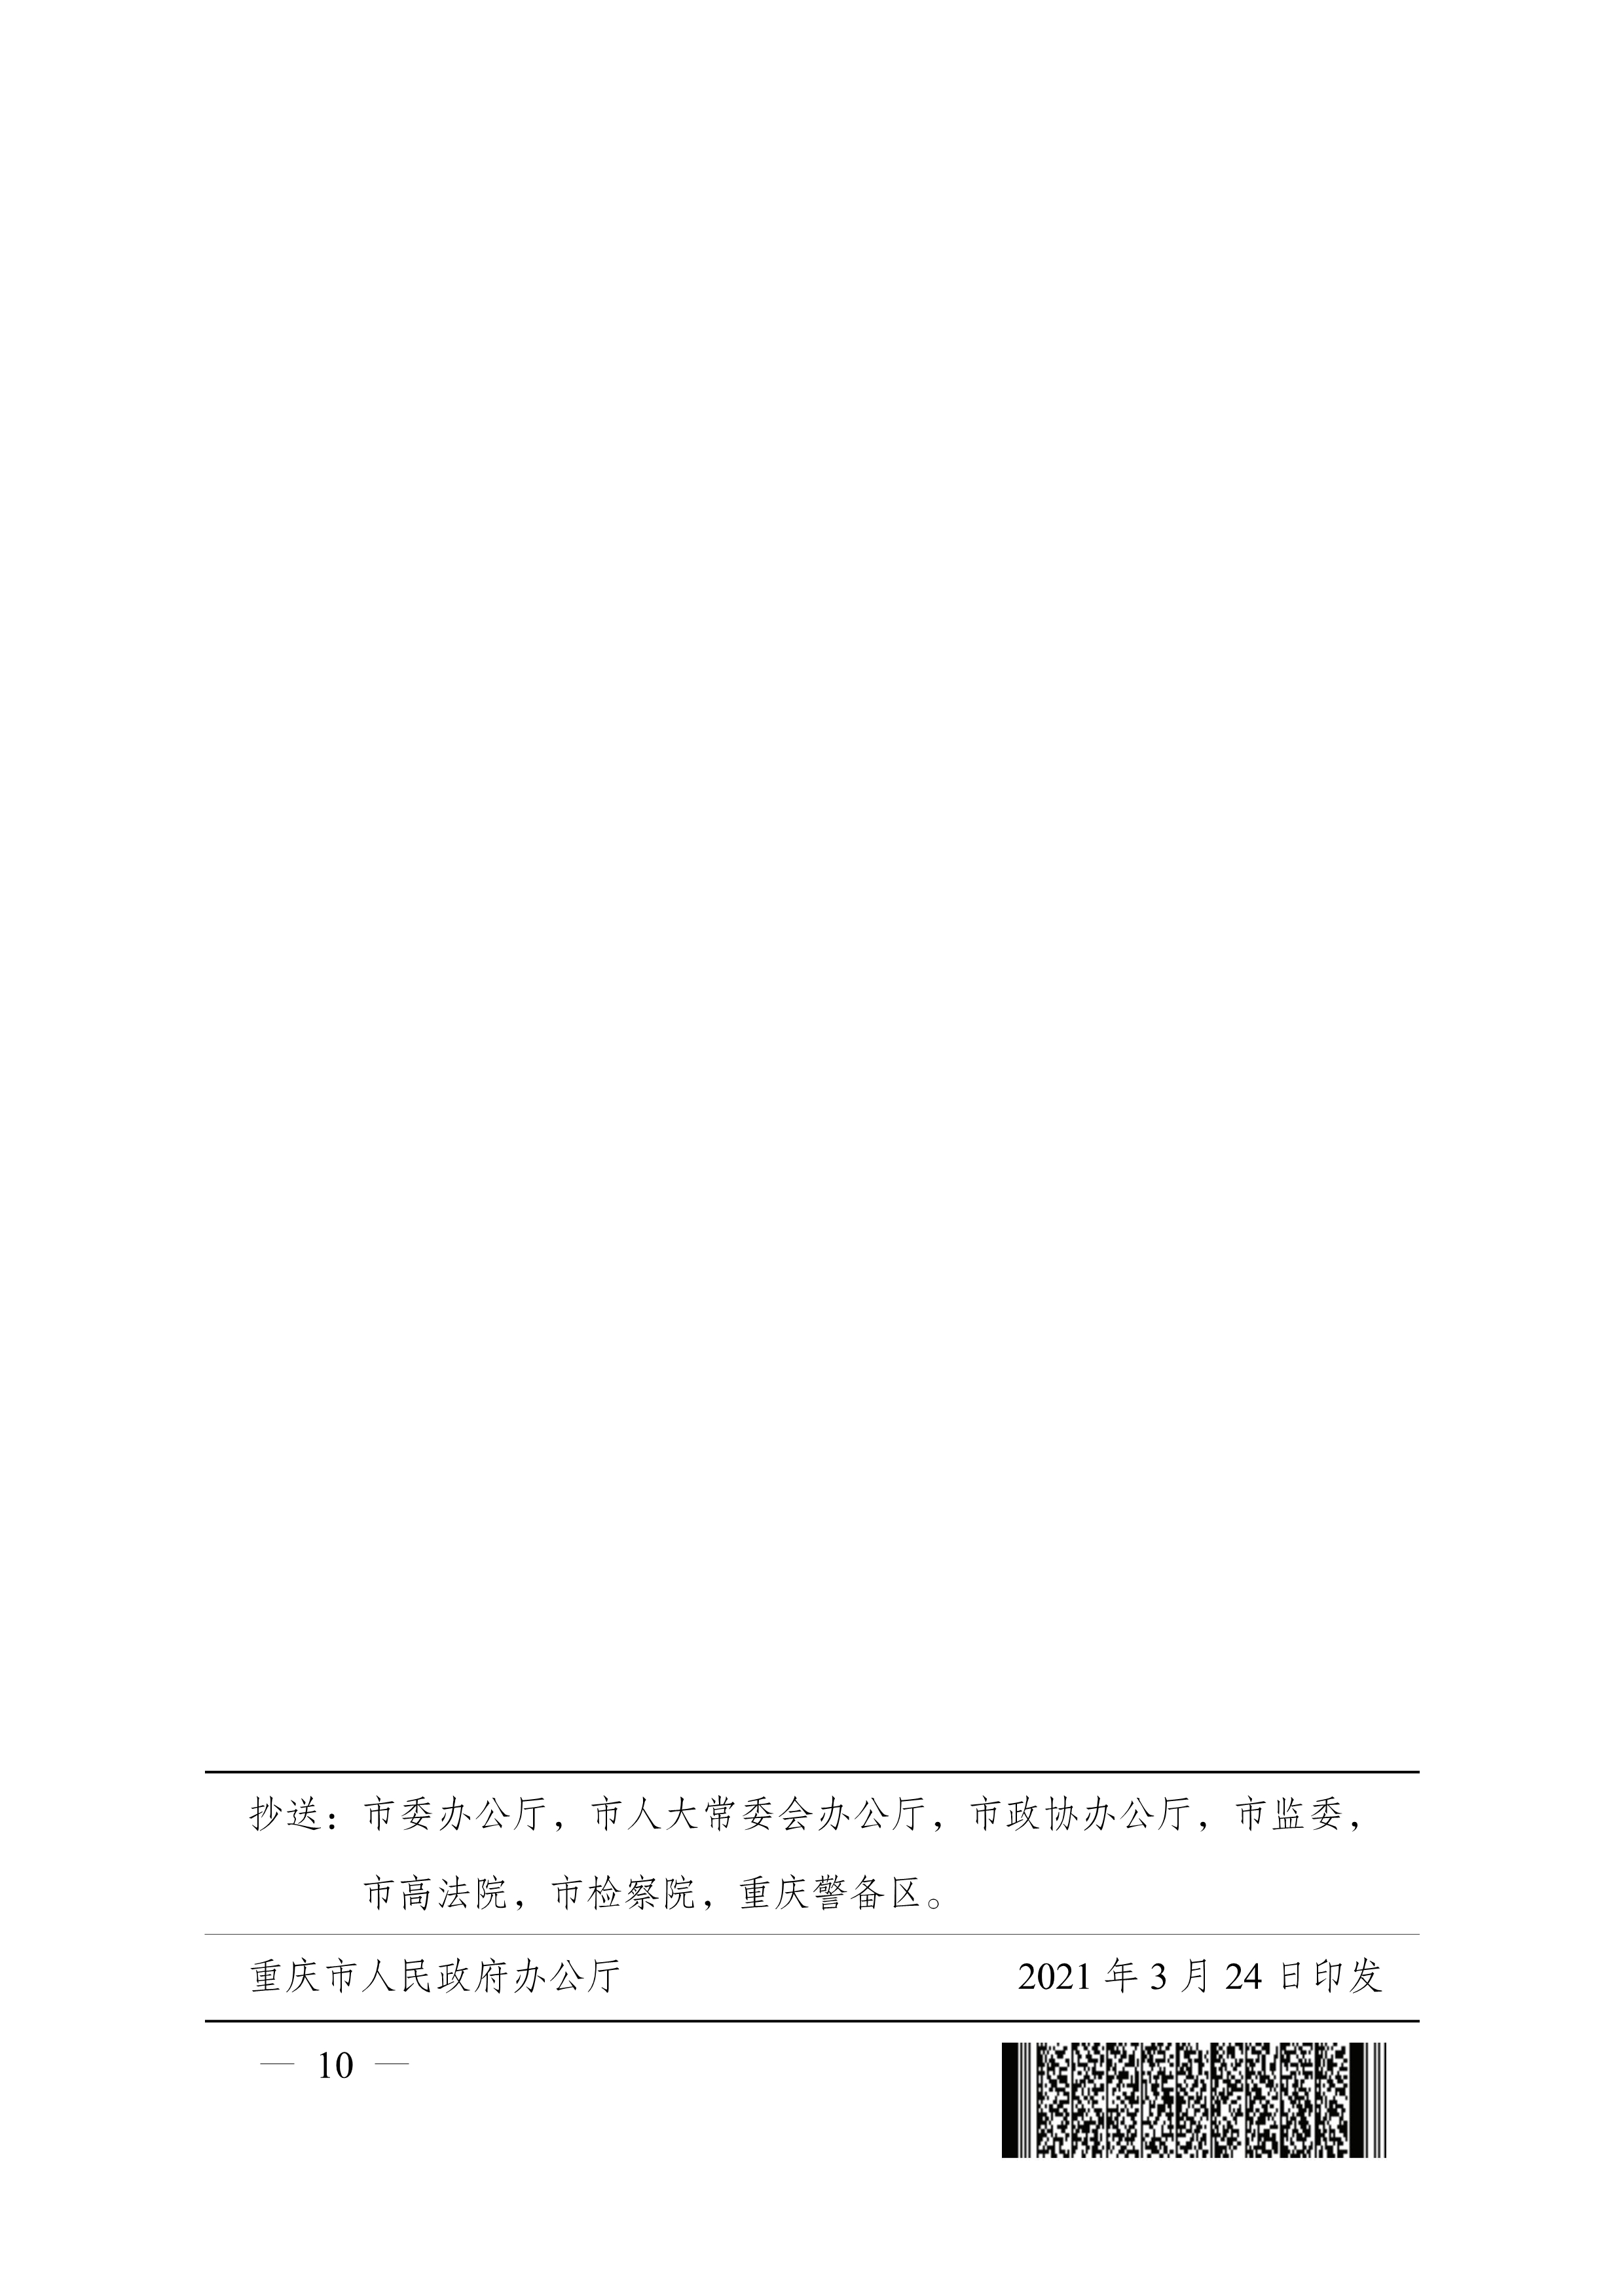 重庆市人民政府办公厅关于促进生产经营稳定发展若干措施的通知(图10)